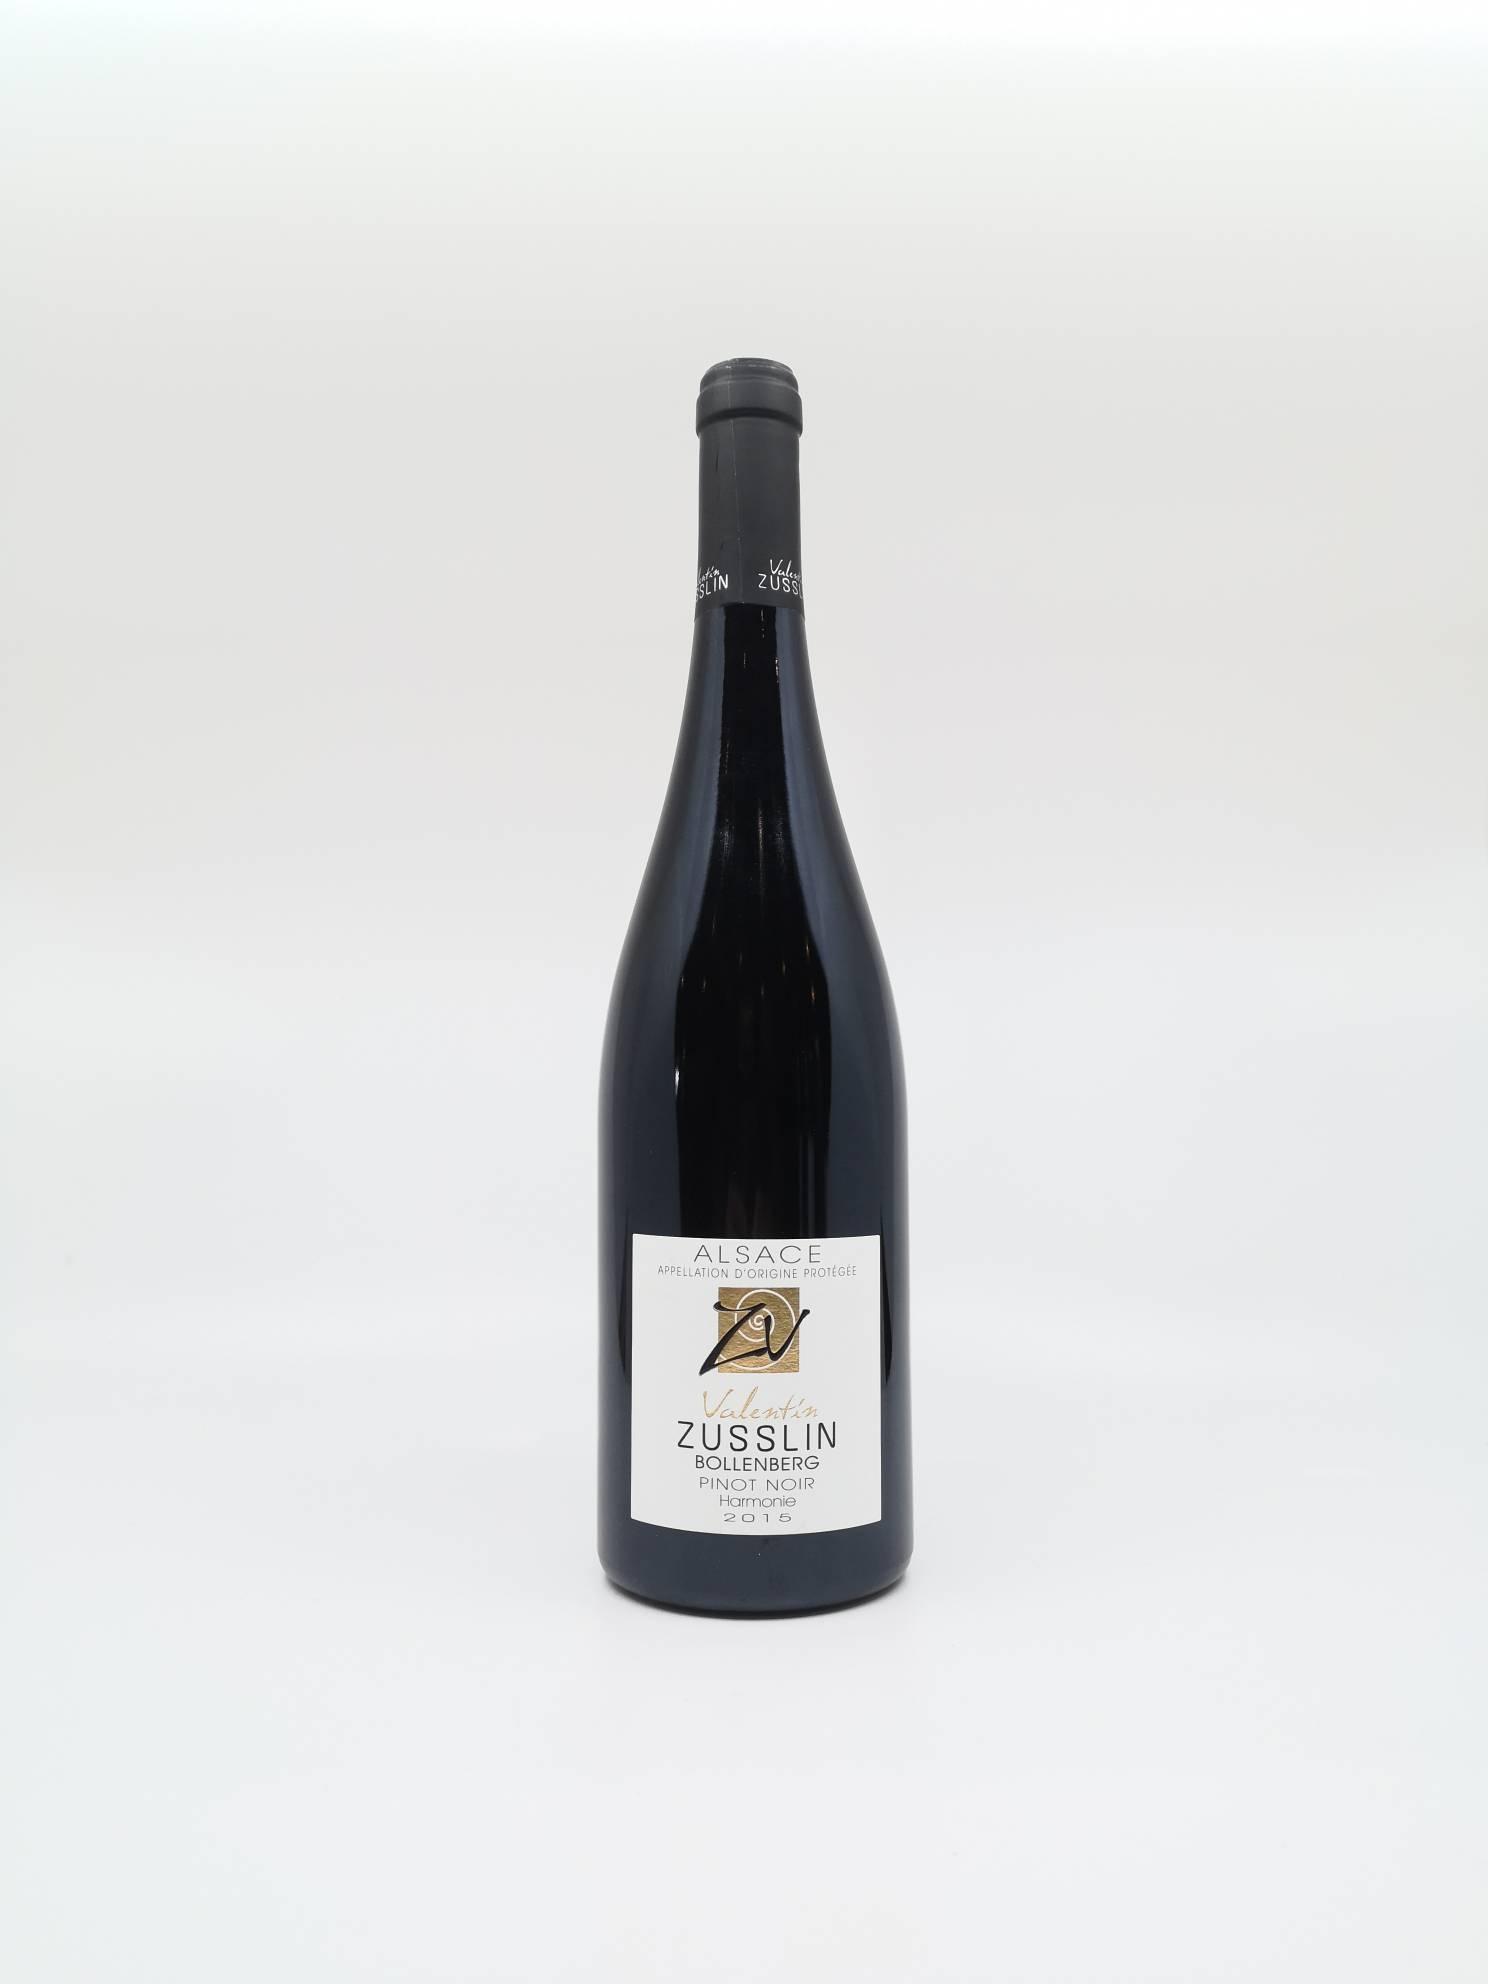 ALSACE Bollenberg Pinot Noir Harmonie ZUSSLIN 2015